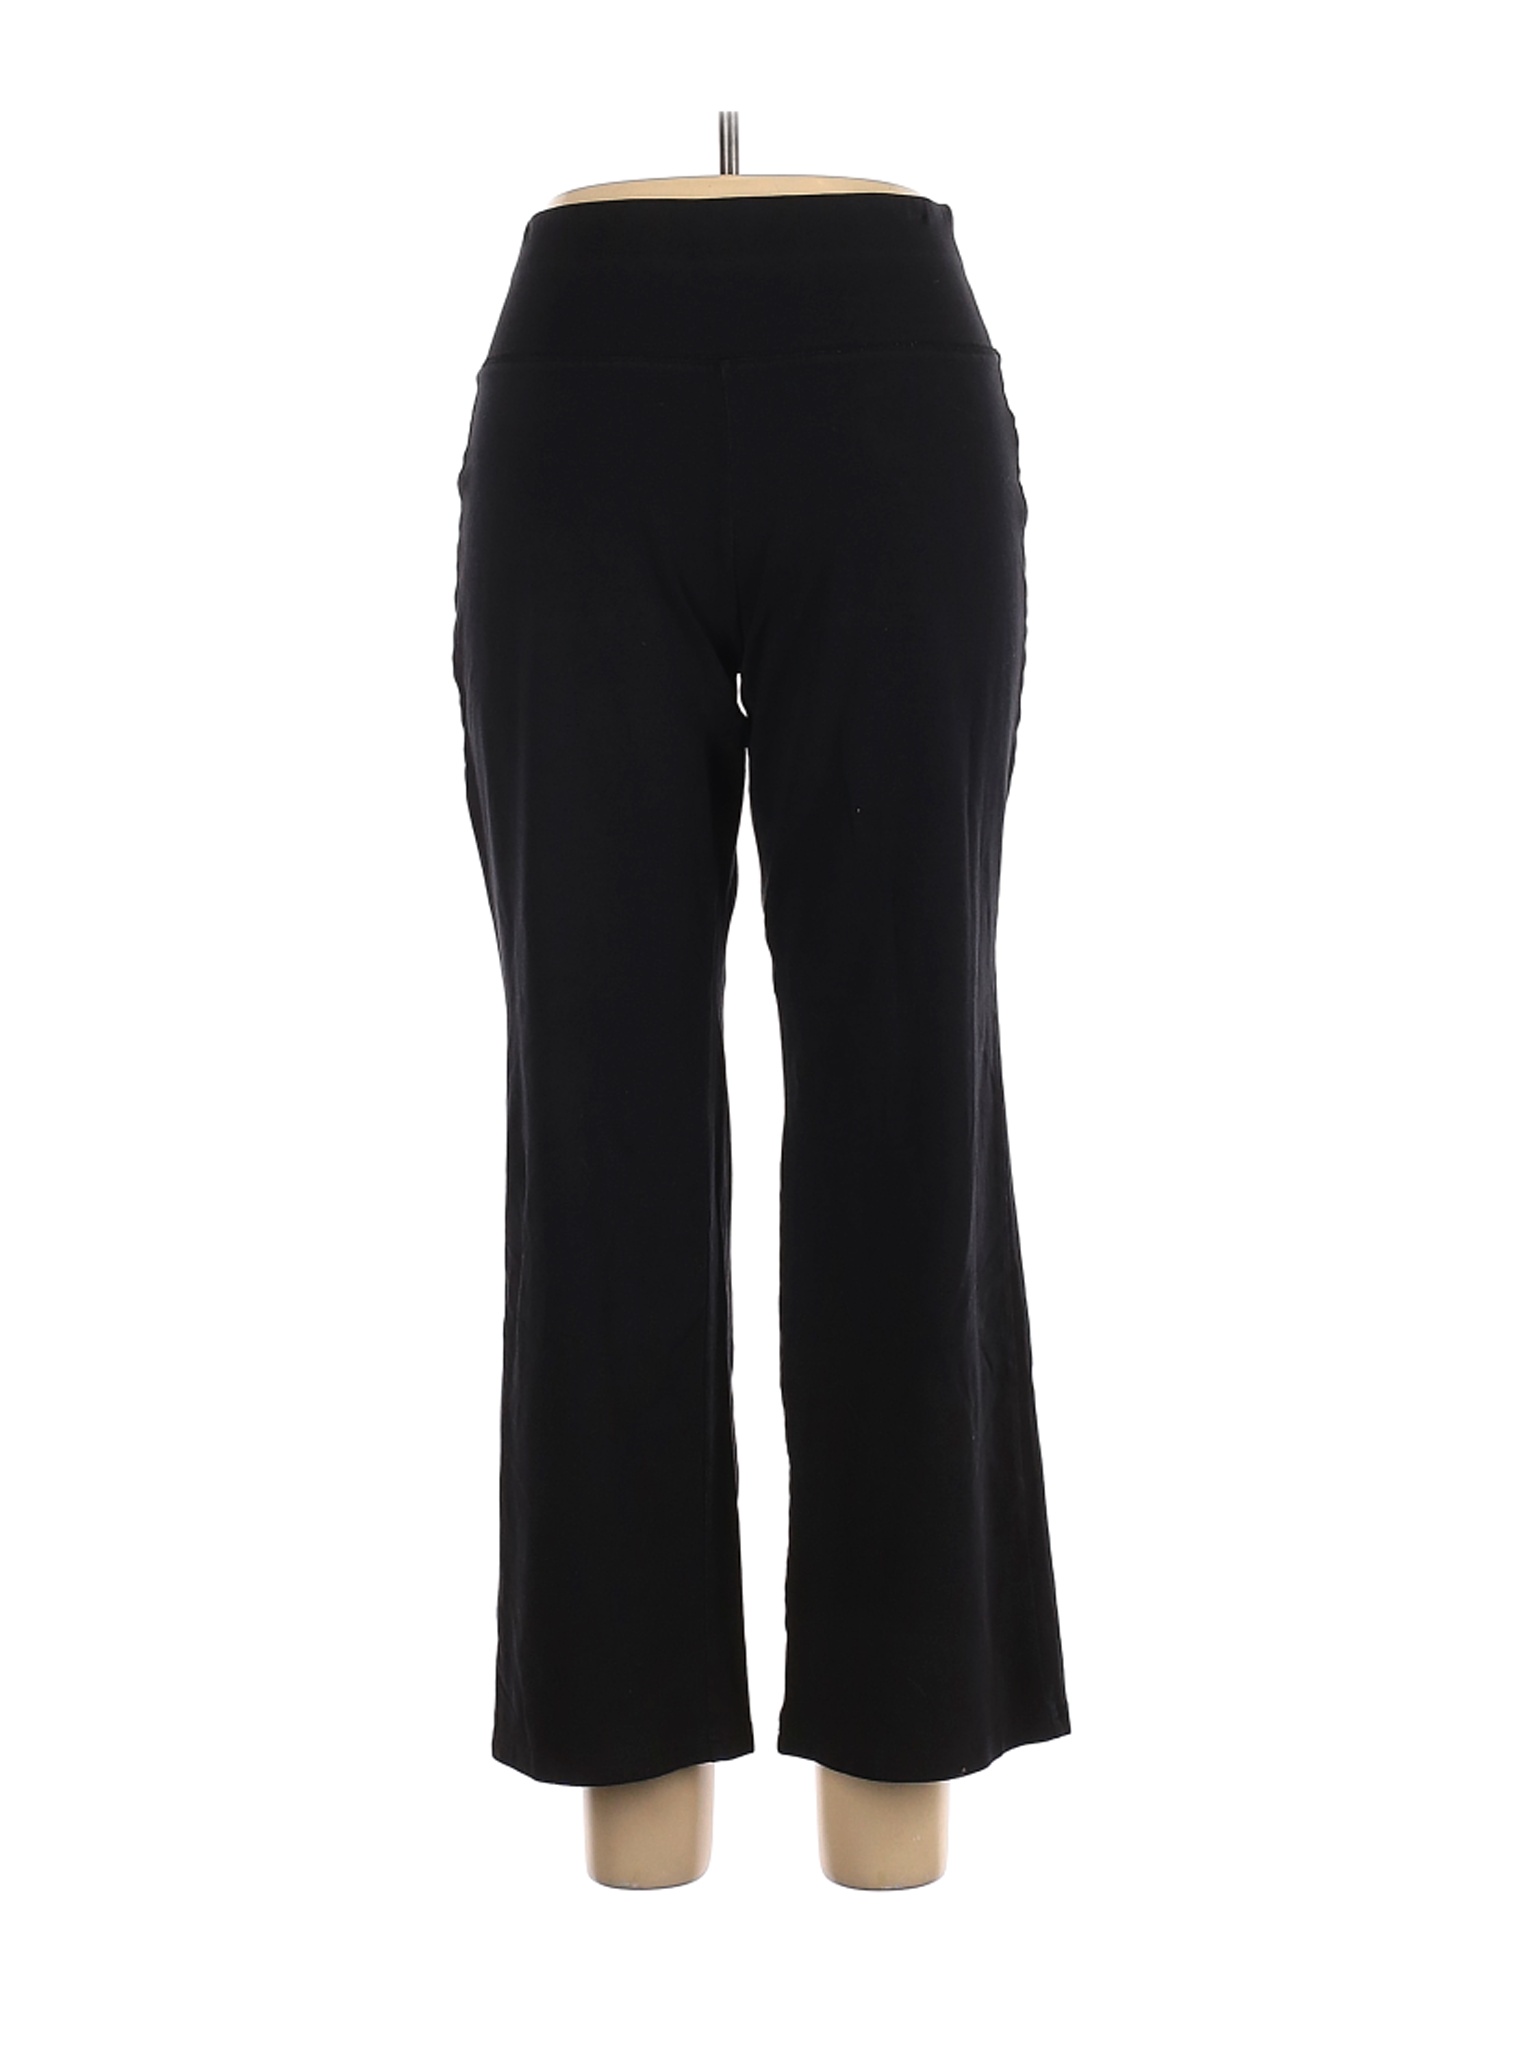 LIVI Active Women Black Active Pants 14 Plus | eBay